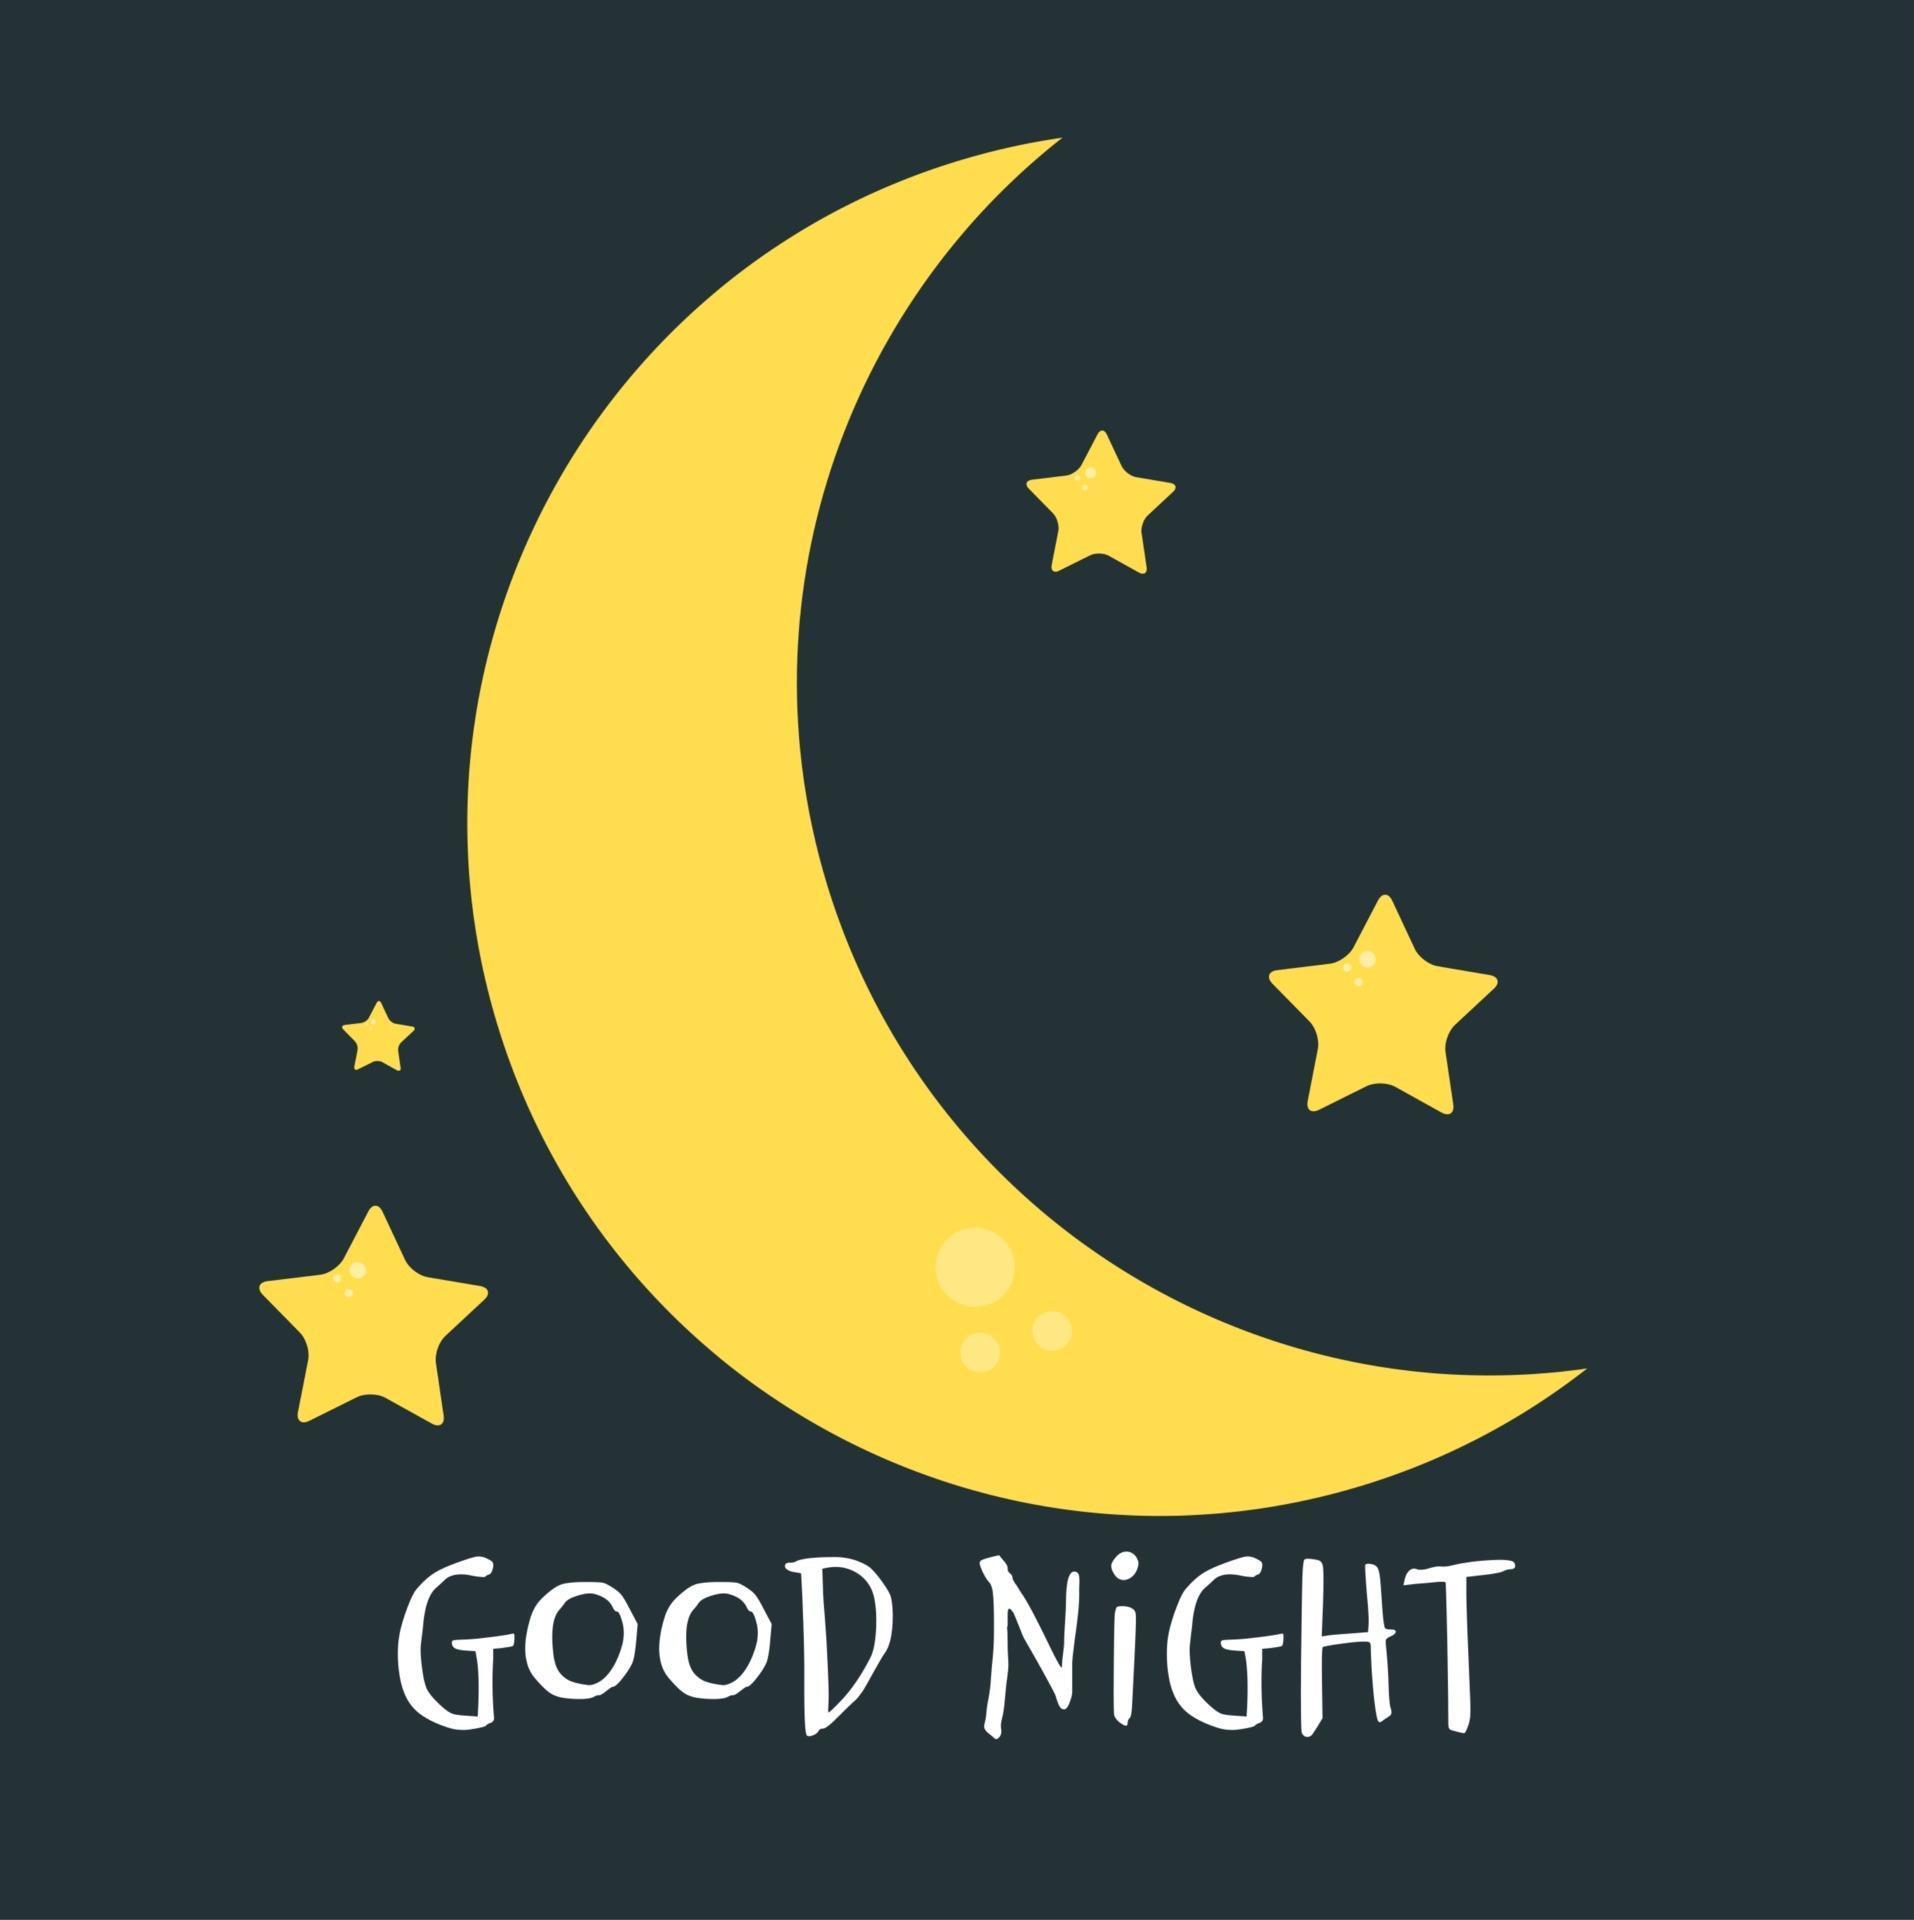 Cute little Moon on the night sky. Good night. vector illustration ...